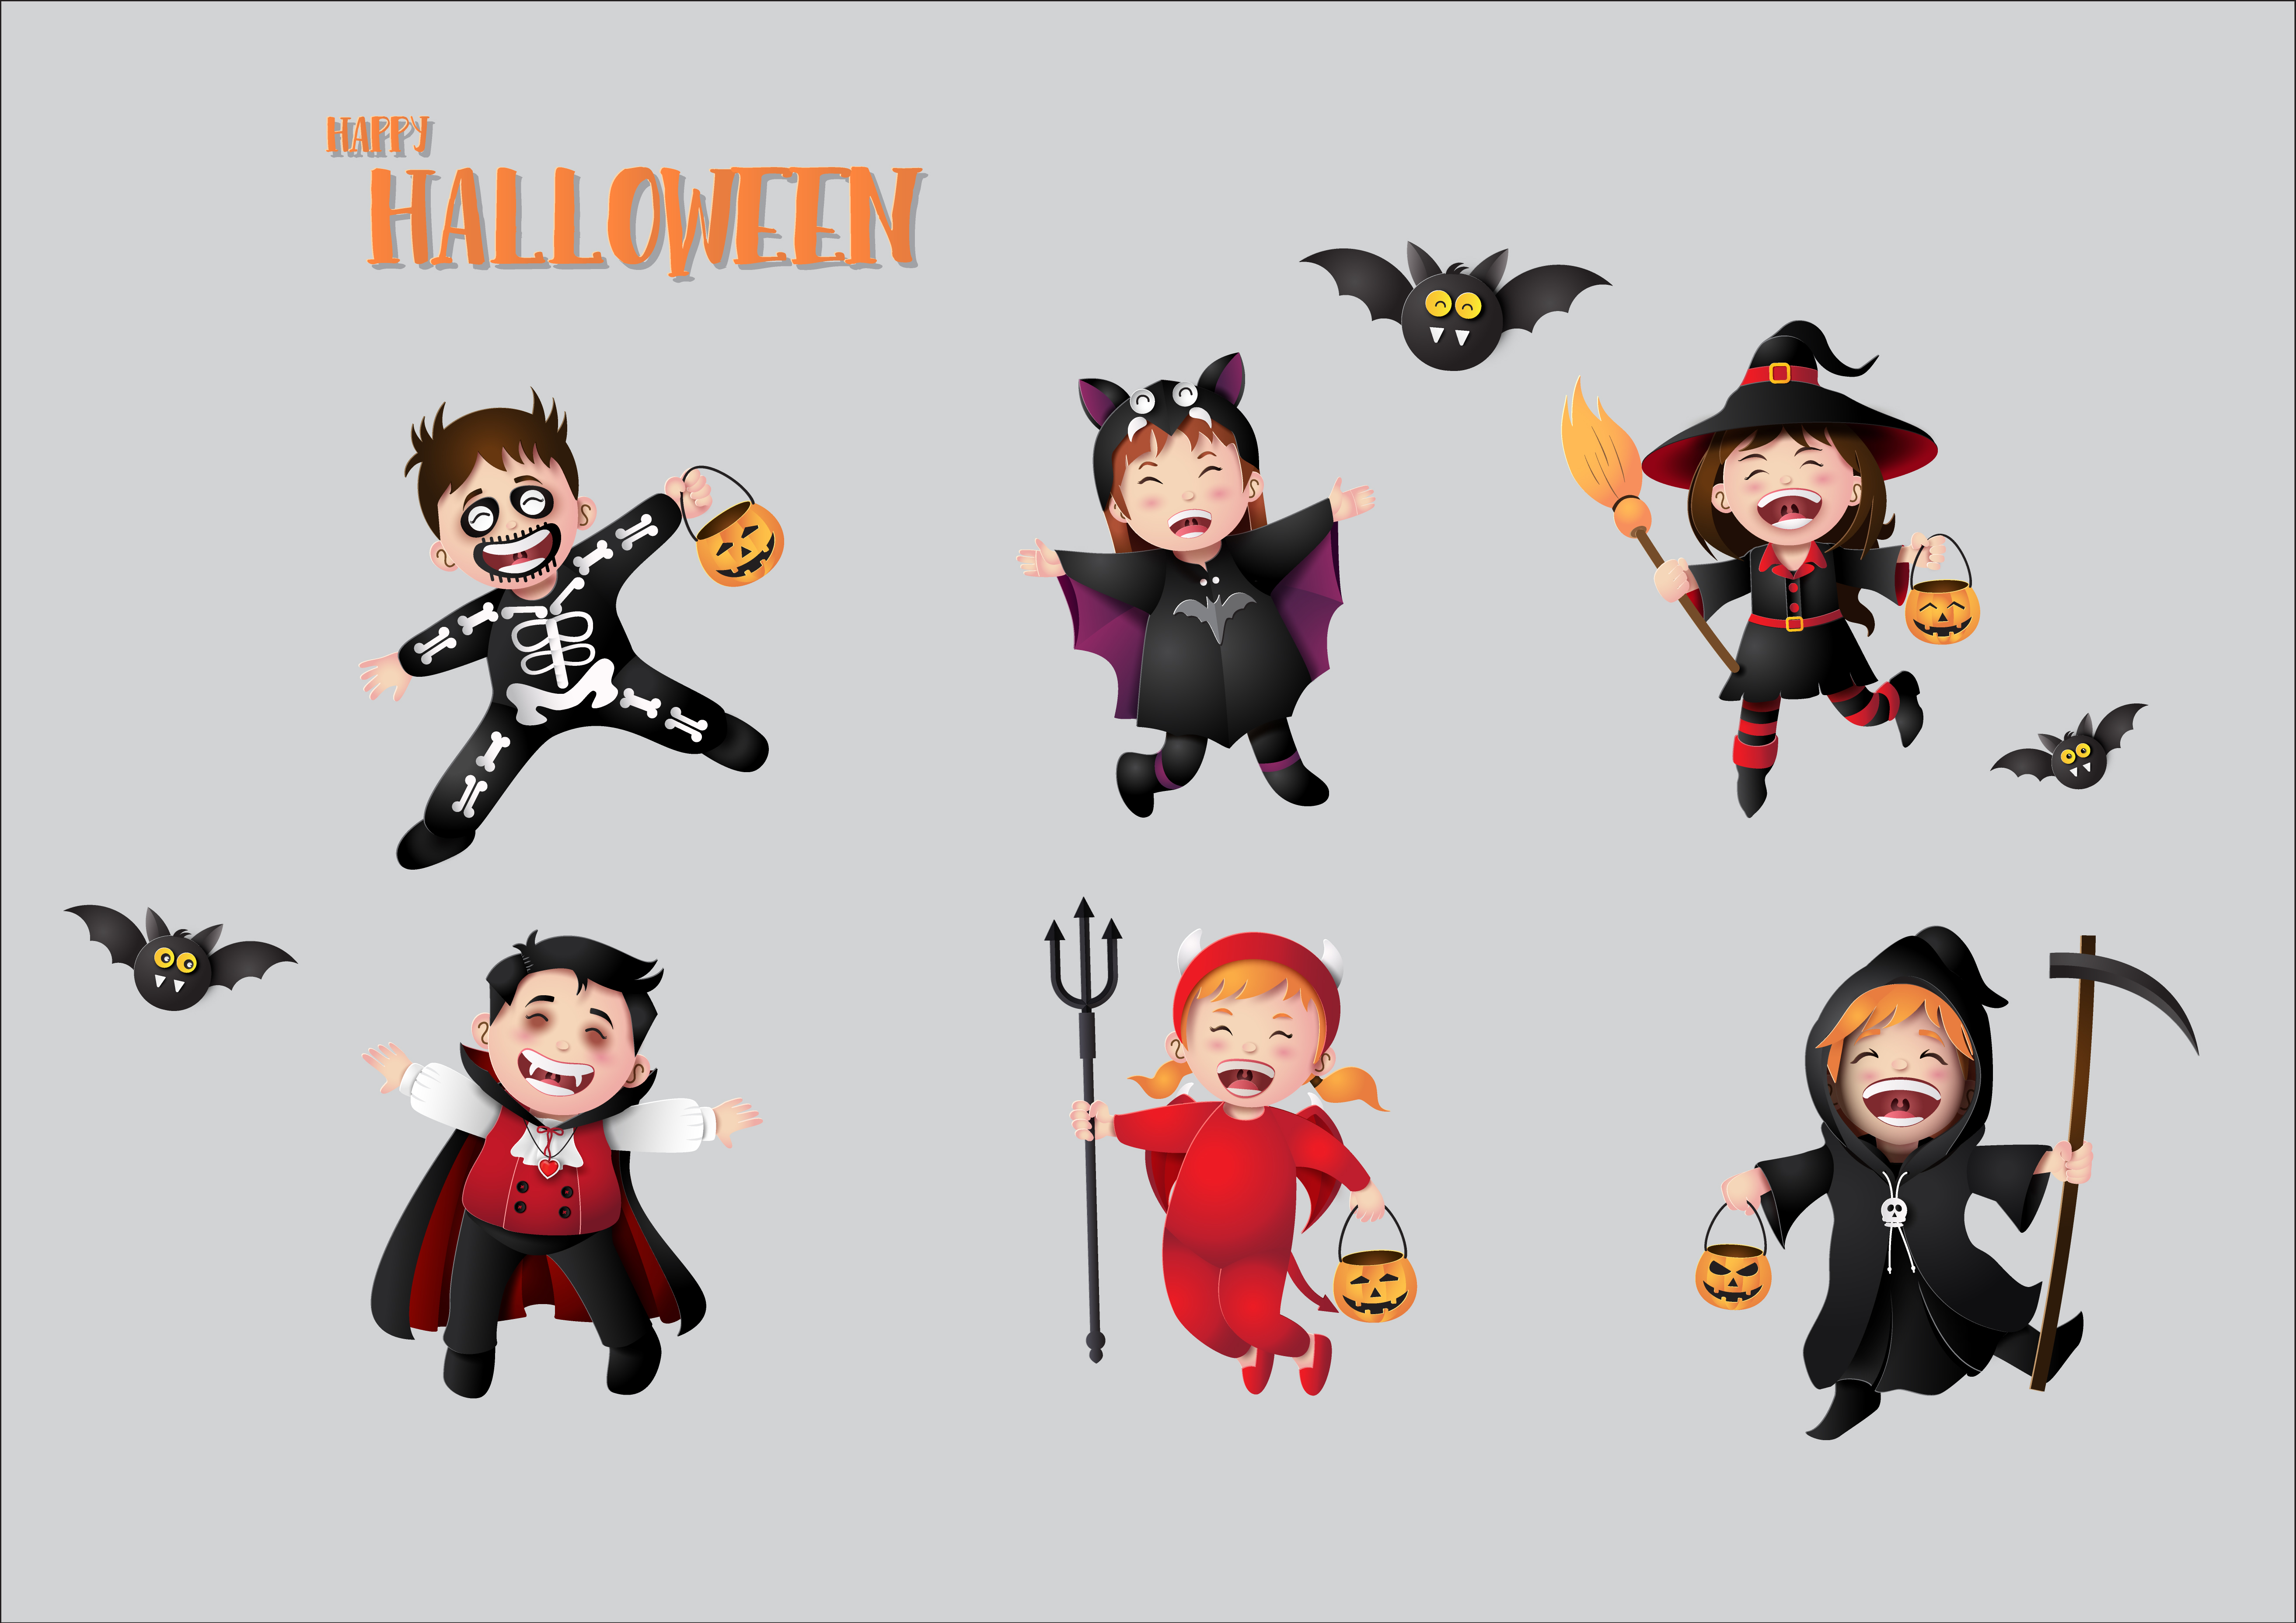 children in halloween costumes. Download Free Vectors